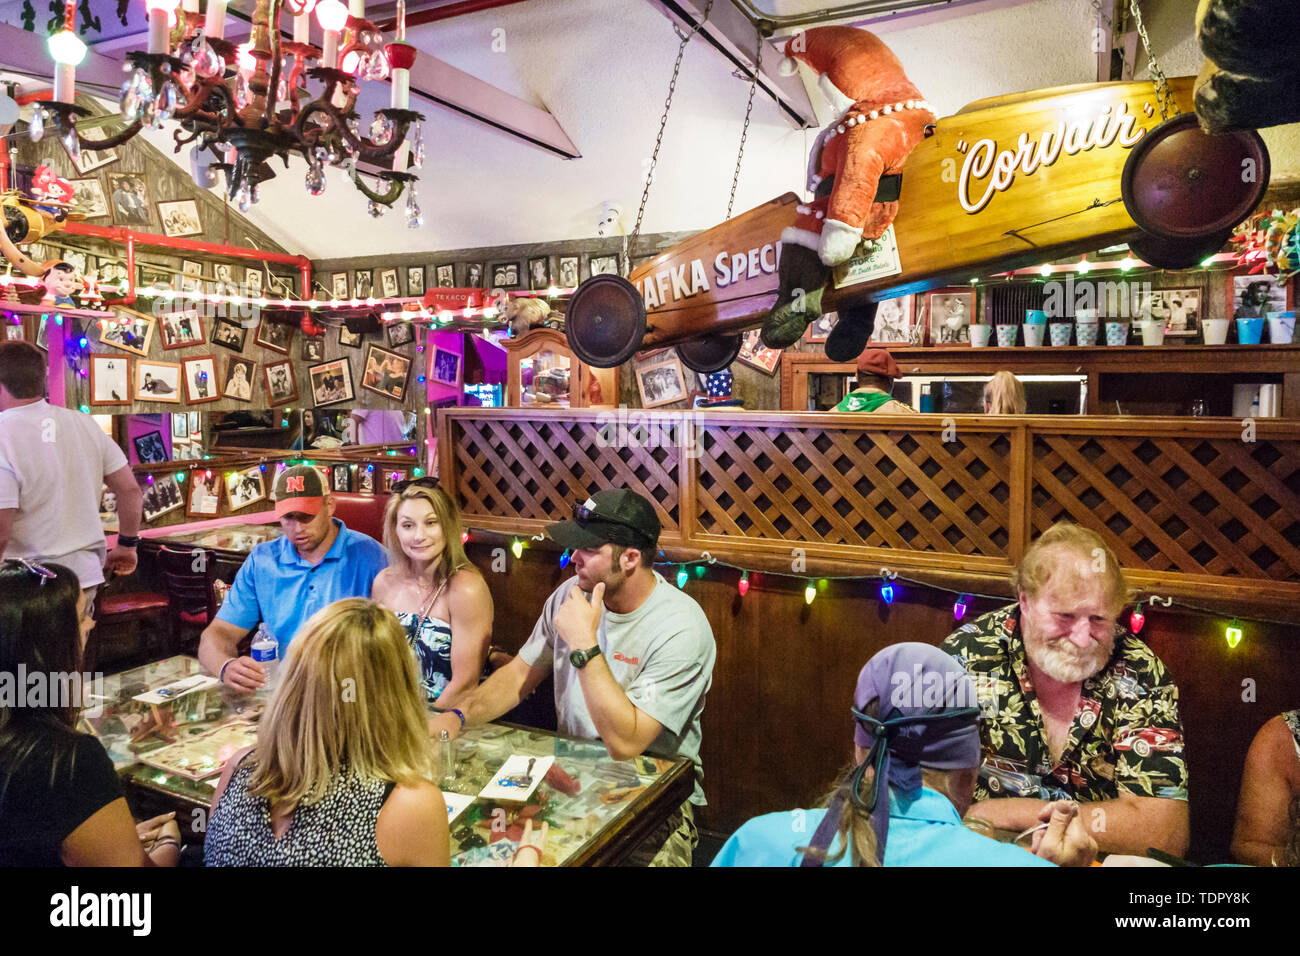 Captiva Island Florida, Bubble Room ristorante ristorazione, interno arredamento uomini donne tavoli coppia famiglia Foto Stock